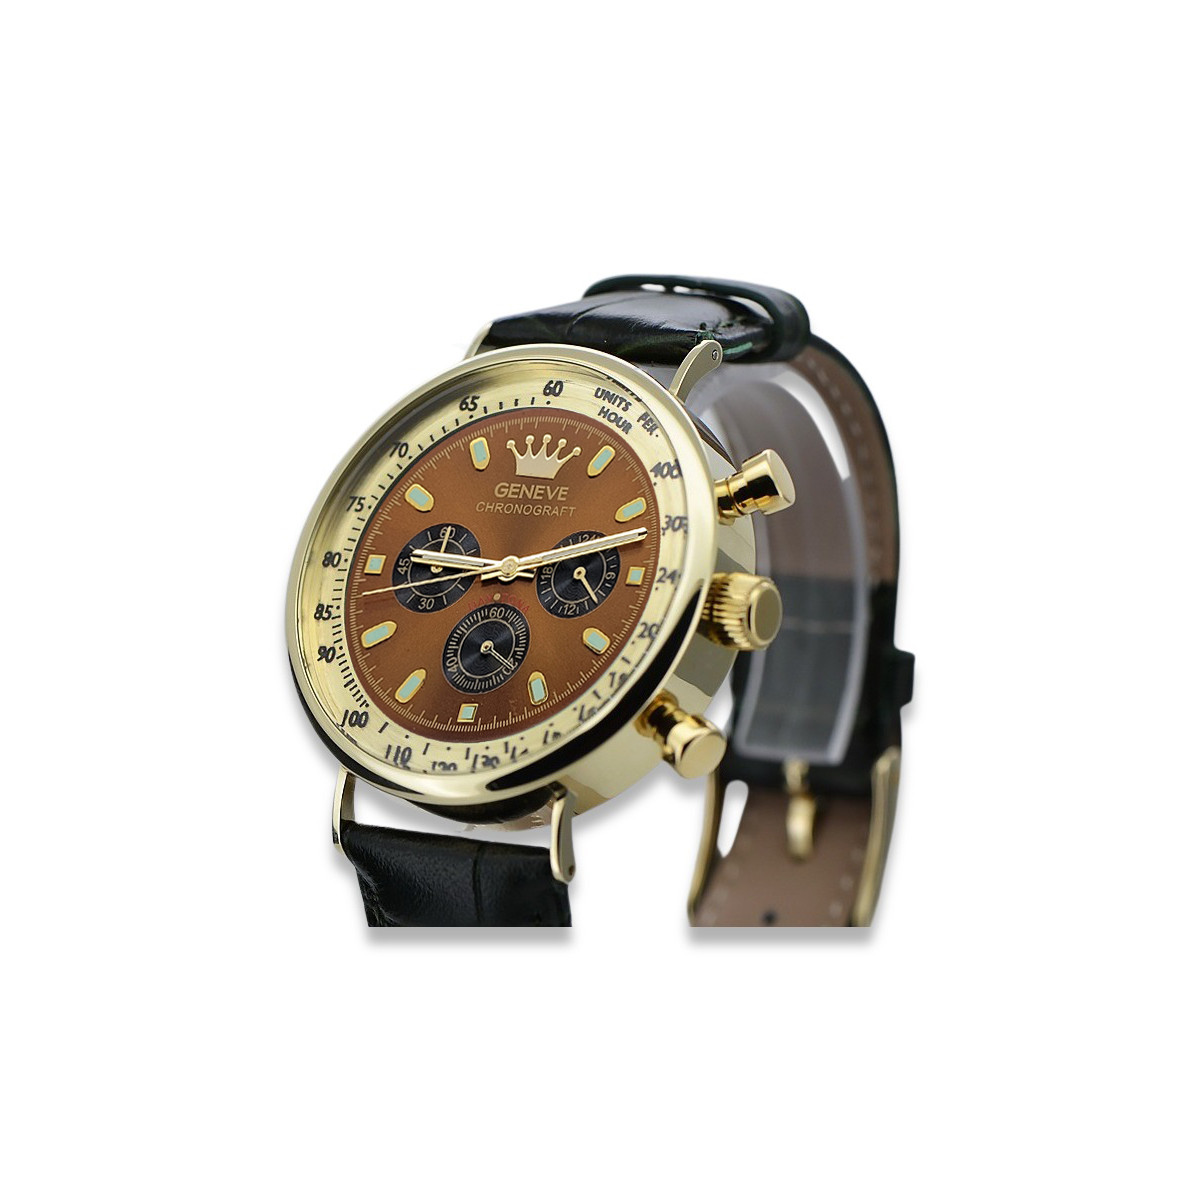 Złoty elegancki zegarek na pasku męski 14k 585 Geneve mw012y-br